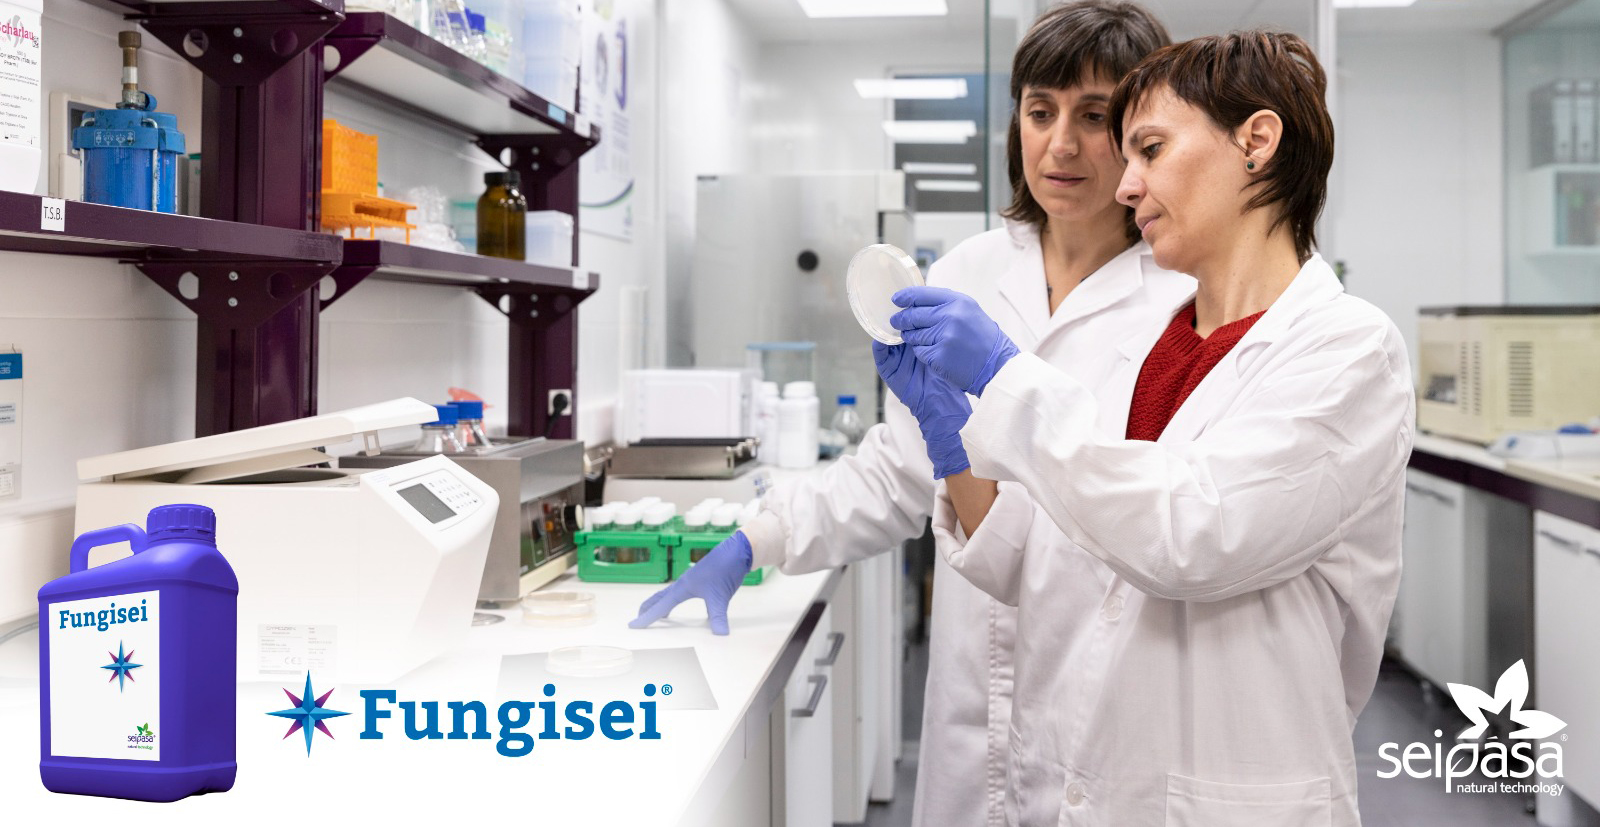 Seipasa lanza el biofungicida Fungisei en Francia tras obtener el registro fitosanitario width=